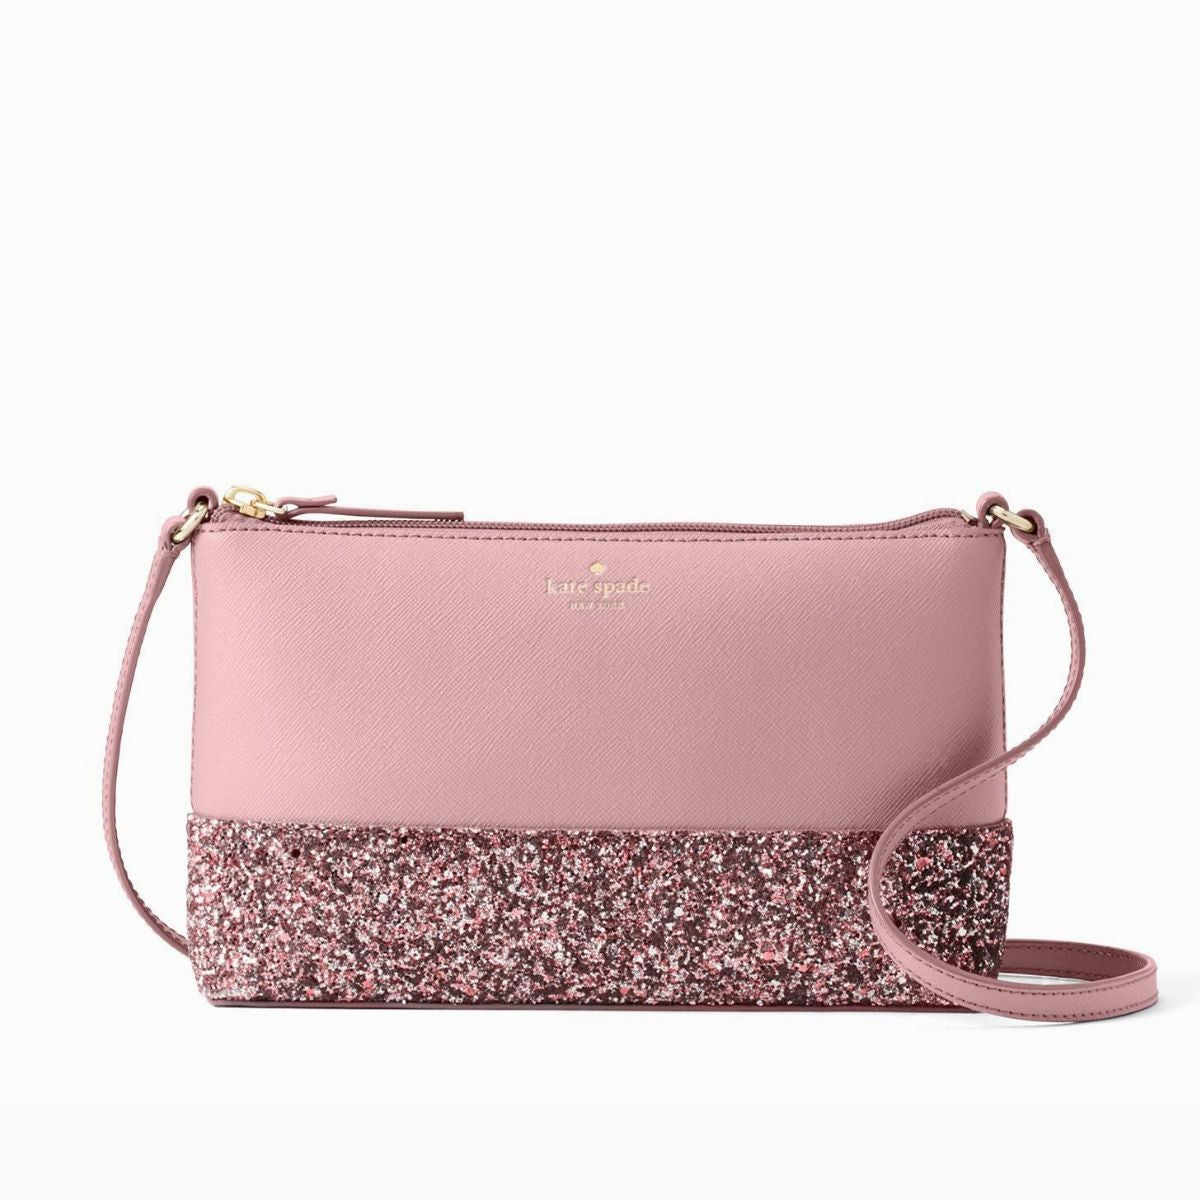 Kate Spade New York Glitter Crossbody Bag ONLY $34.97 (Reg $239